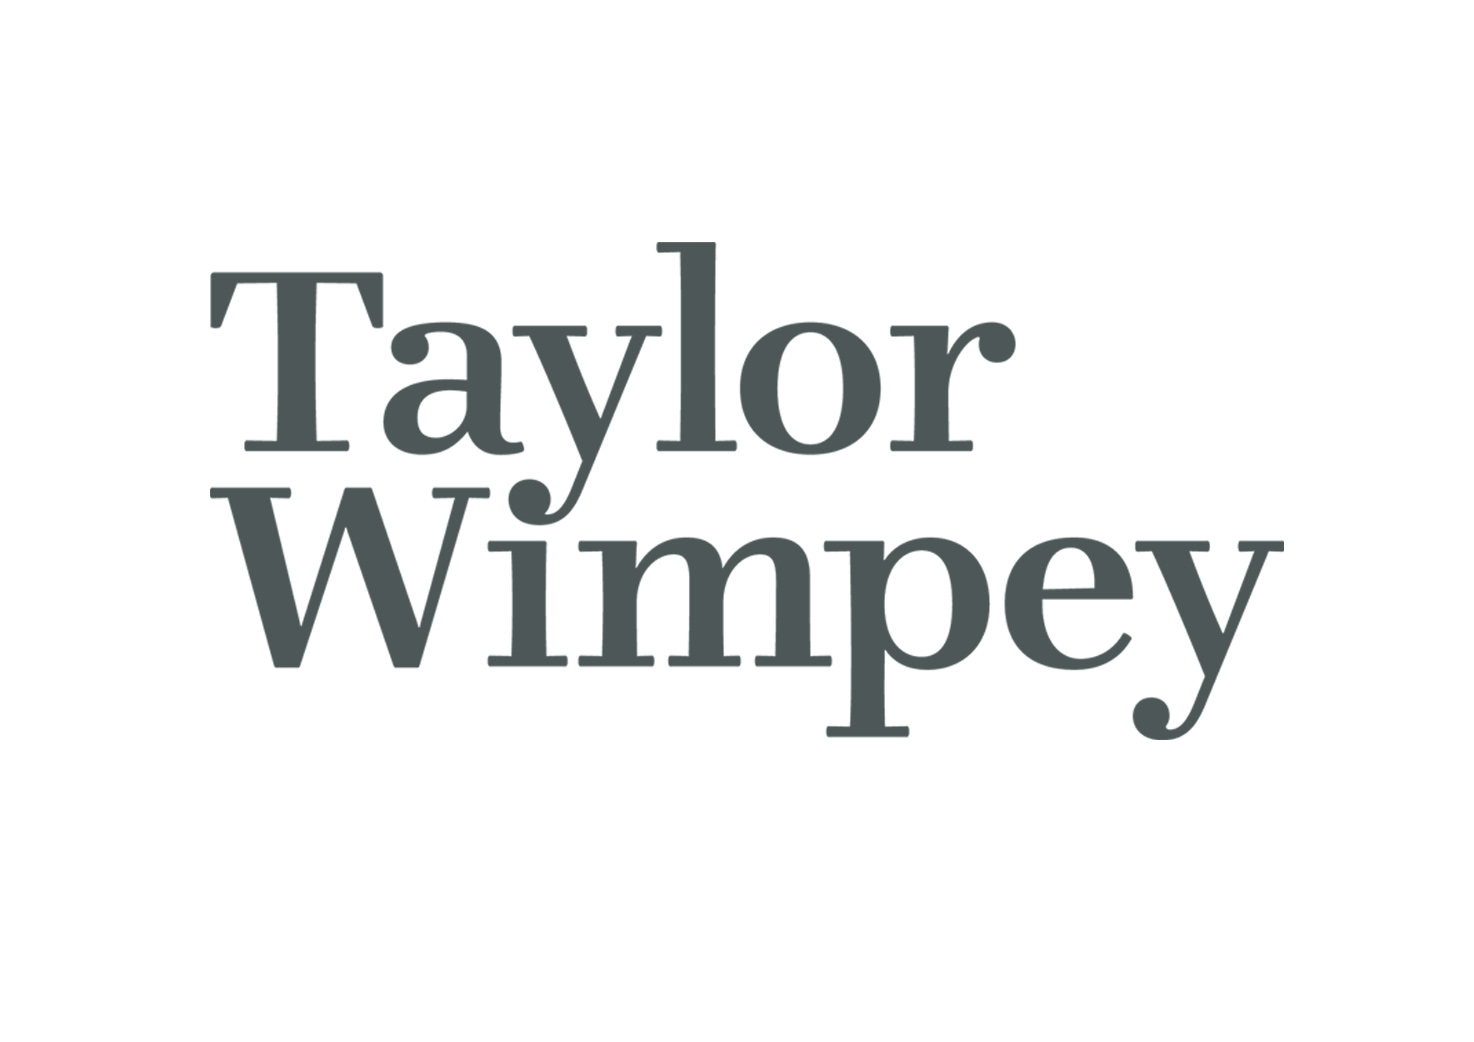 Taylort Wimpey.jpg